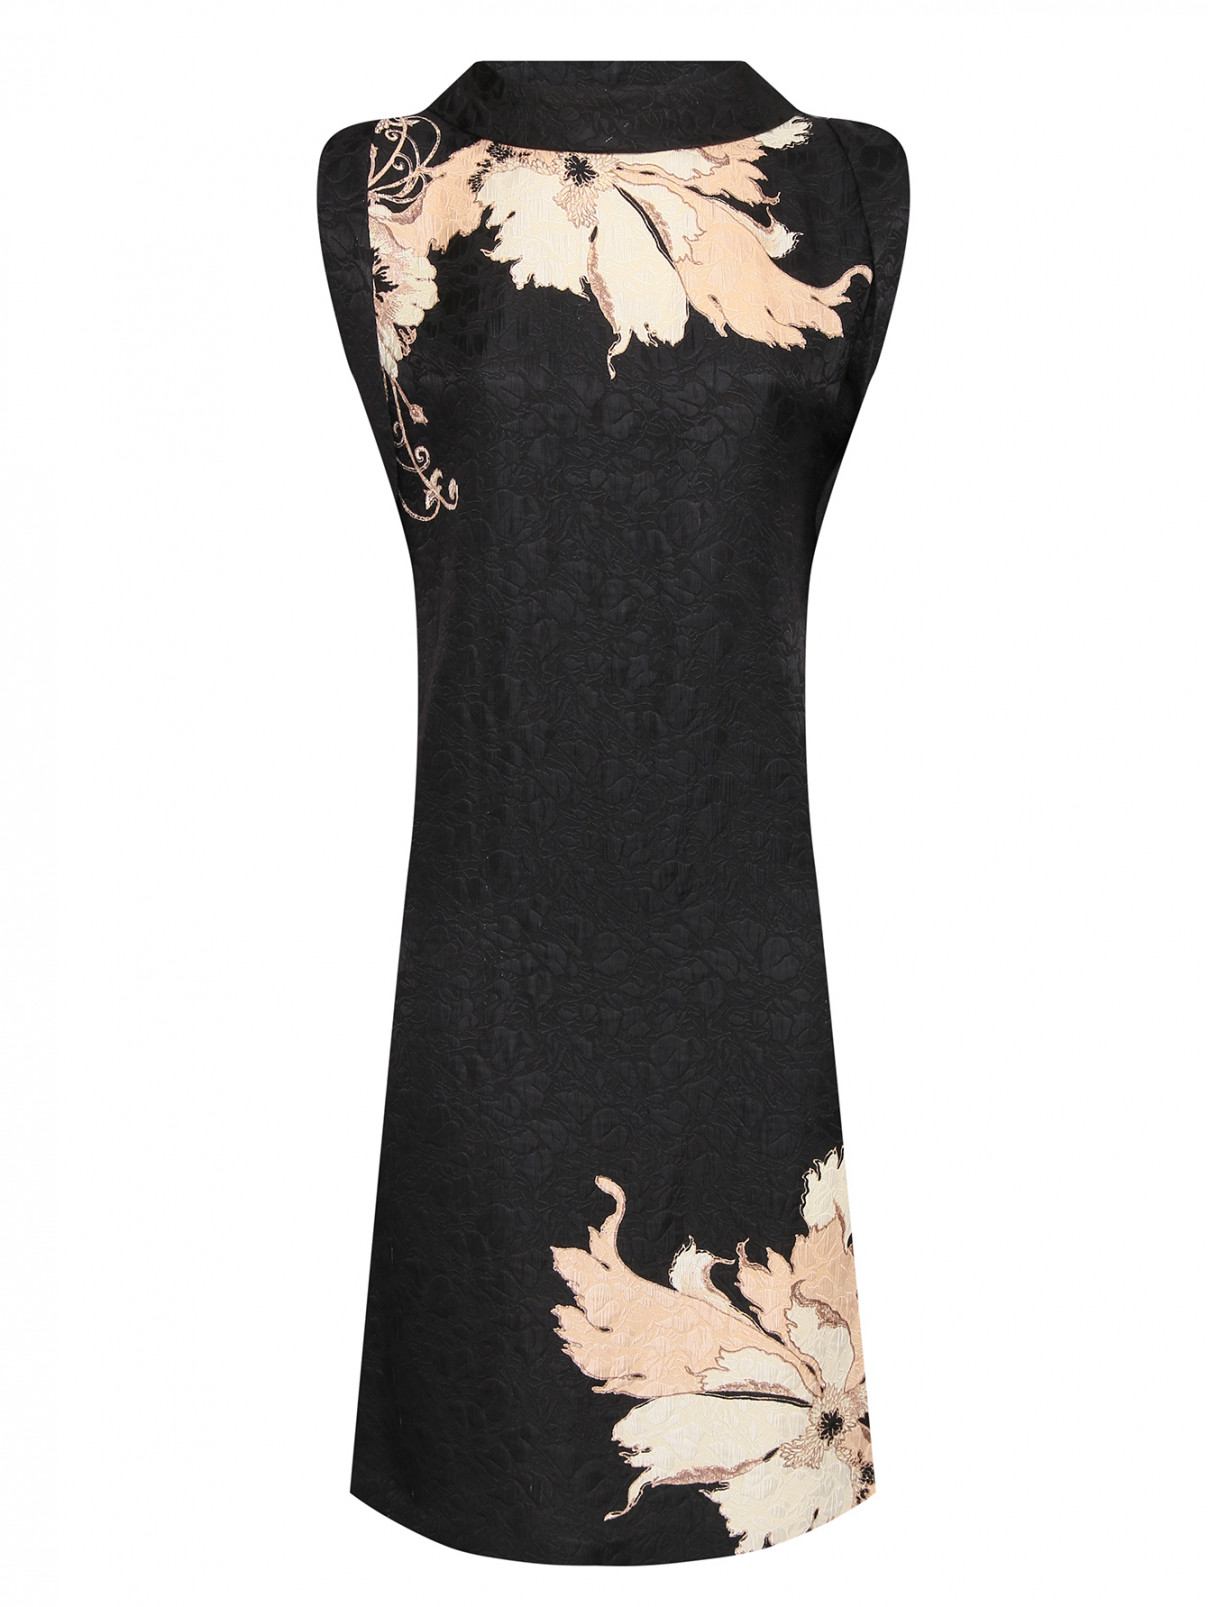 Платье из шерсти, вискозы и шелка с узором Etro  –  Общий вид  – Цвет:  Черный